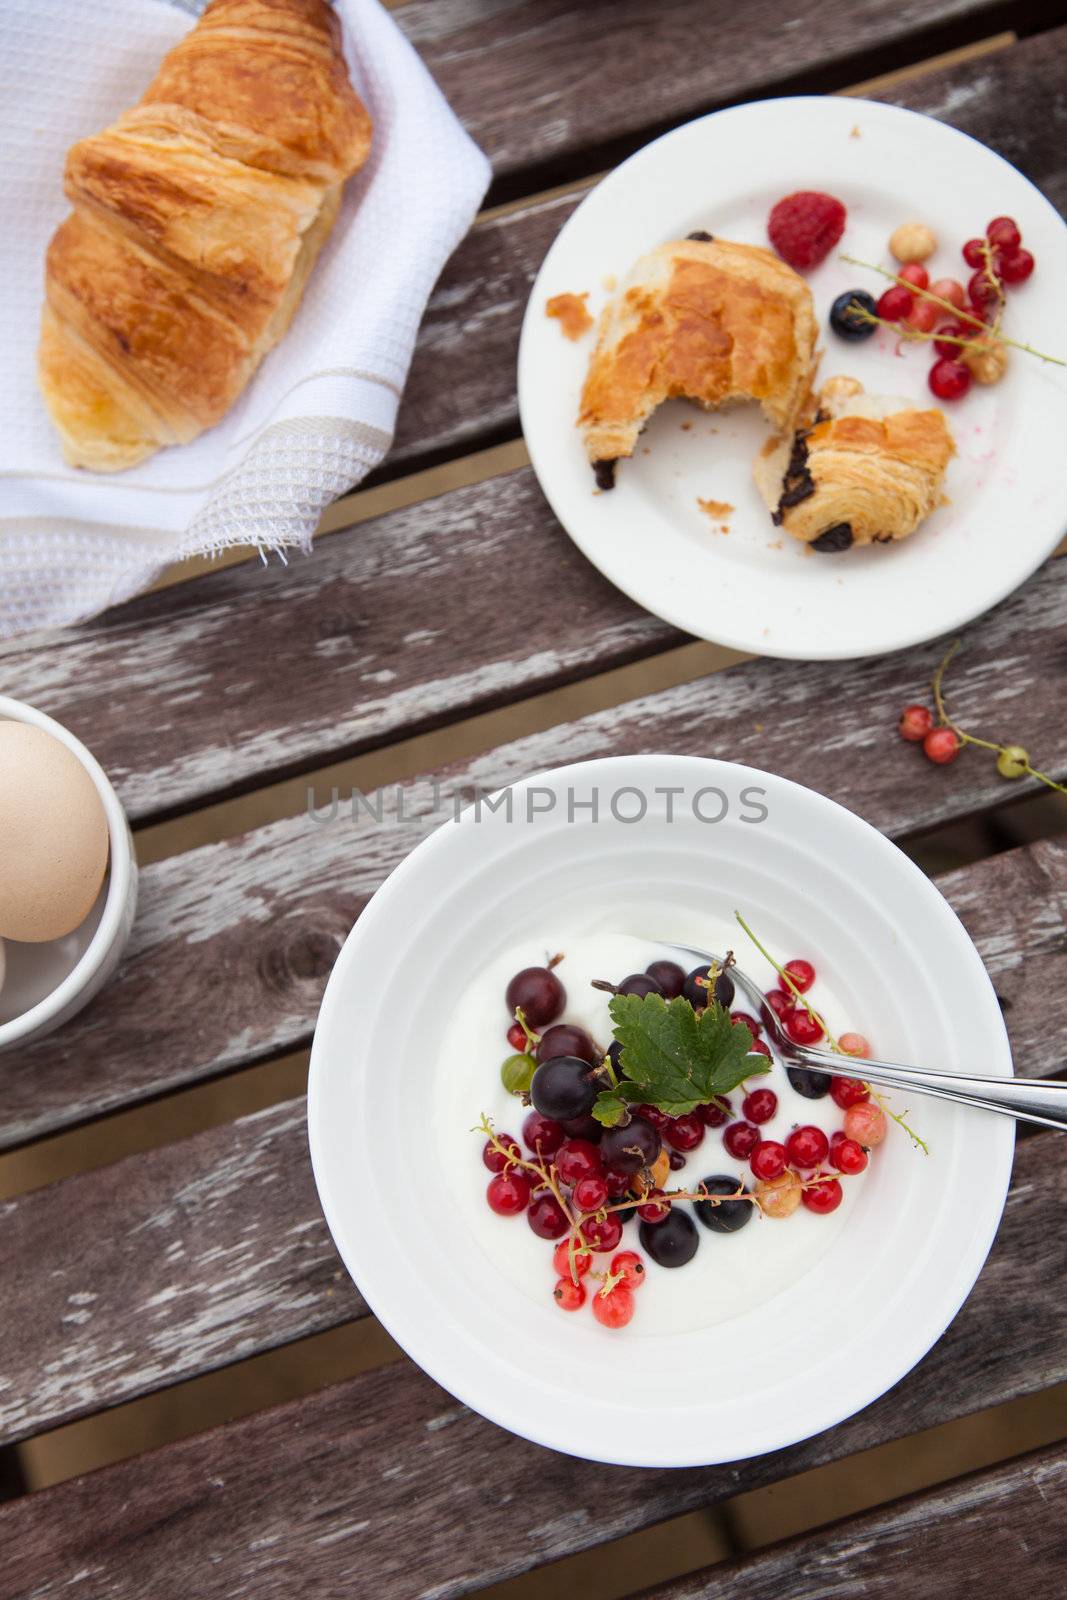 Breakfast by Fotosmurf